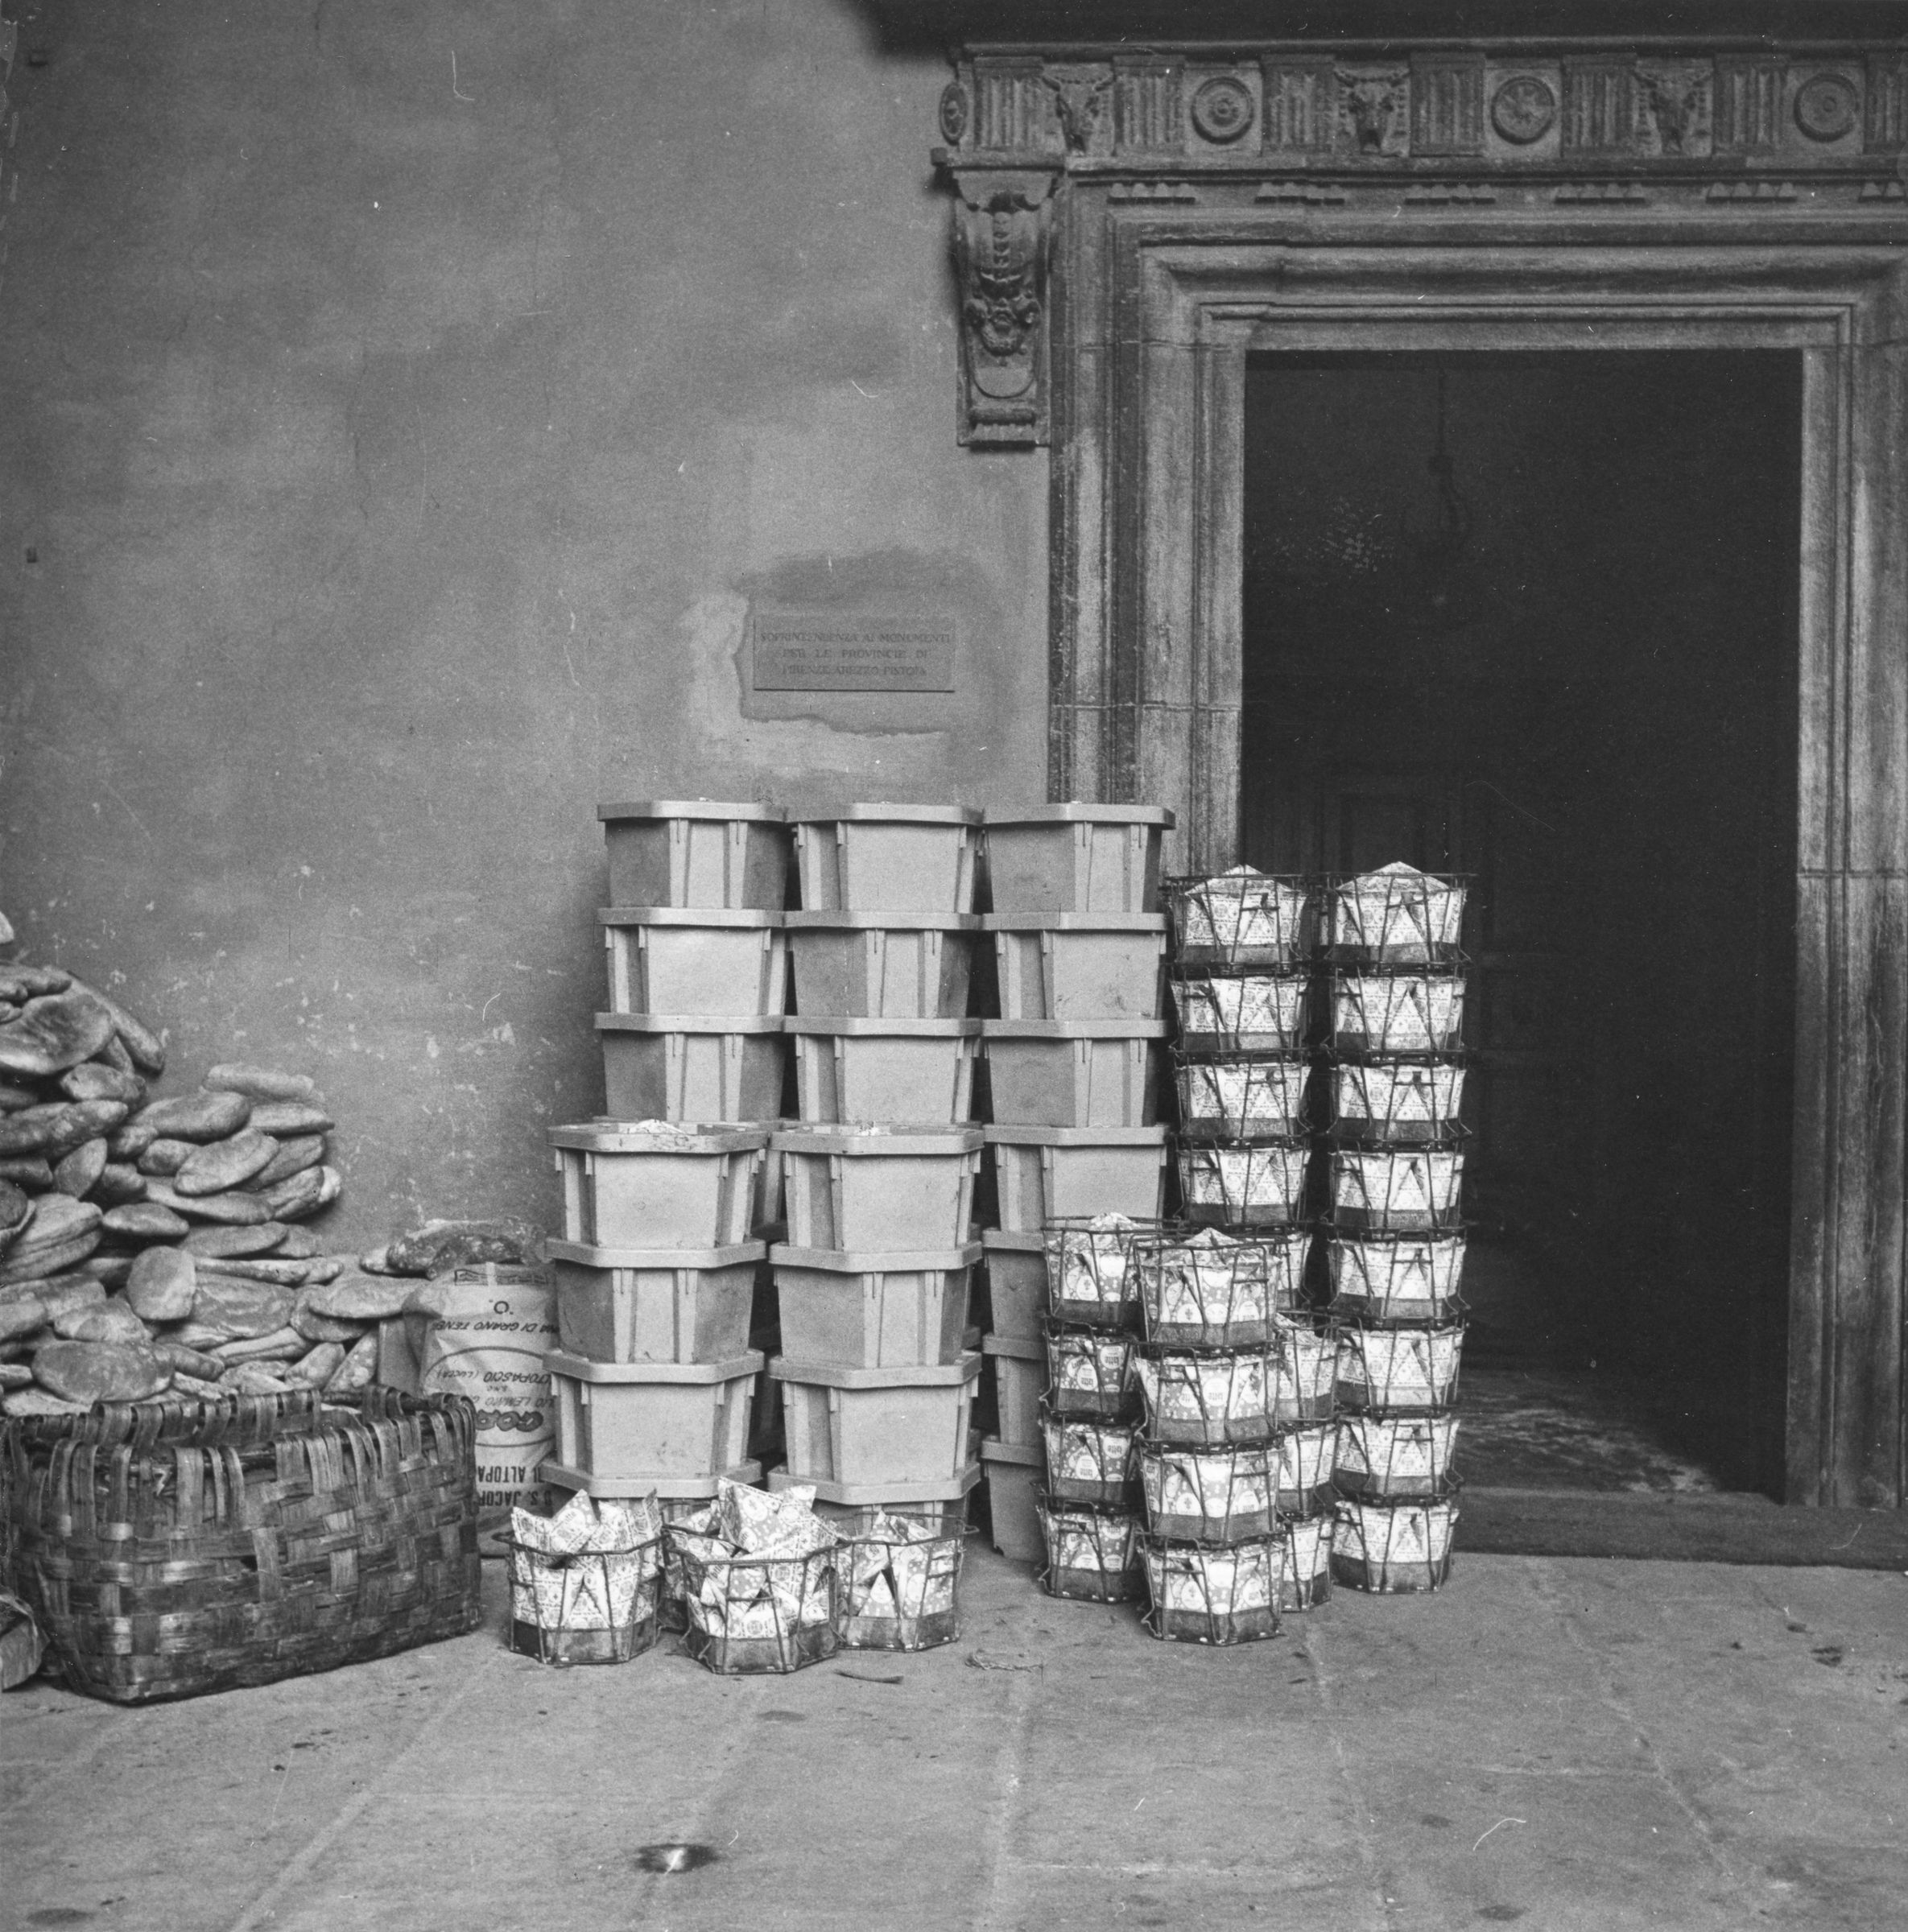 Fotografo non identificato, Firenze - Palazzo Pitti, cortile, 1966, gelatina ai sali d'argento, 6x6cm, N004480